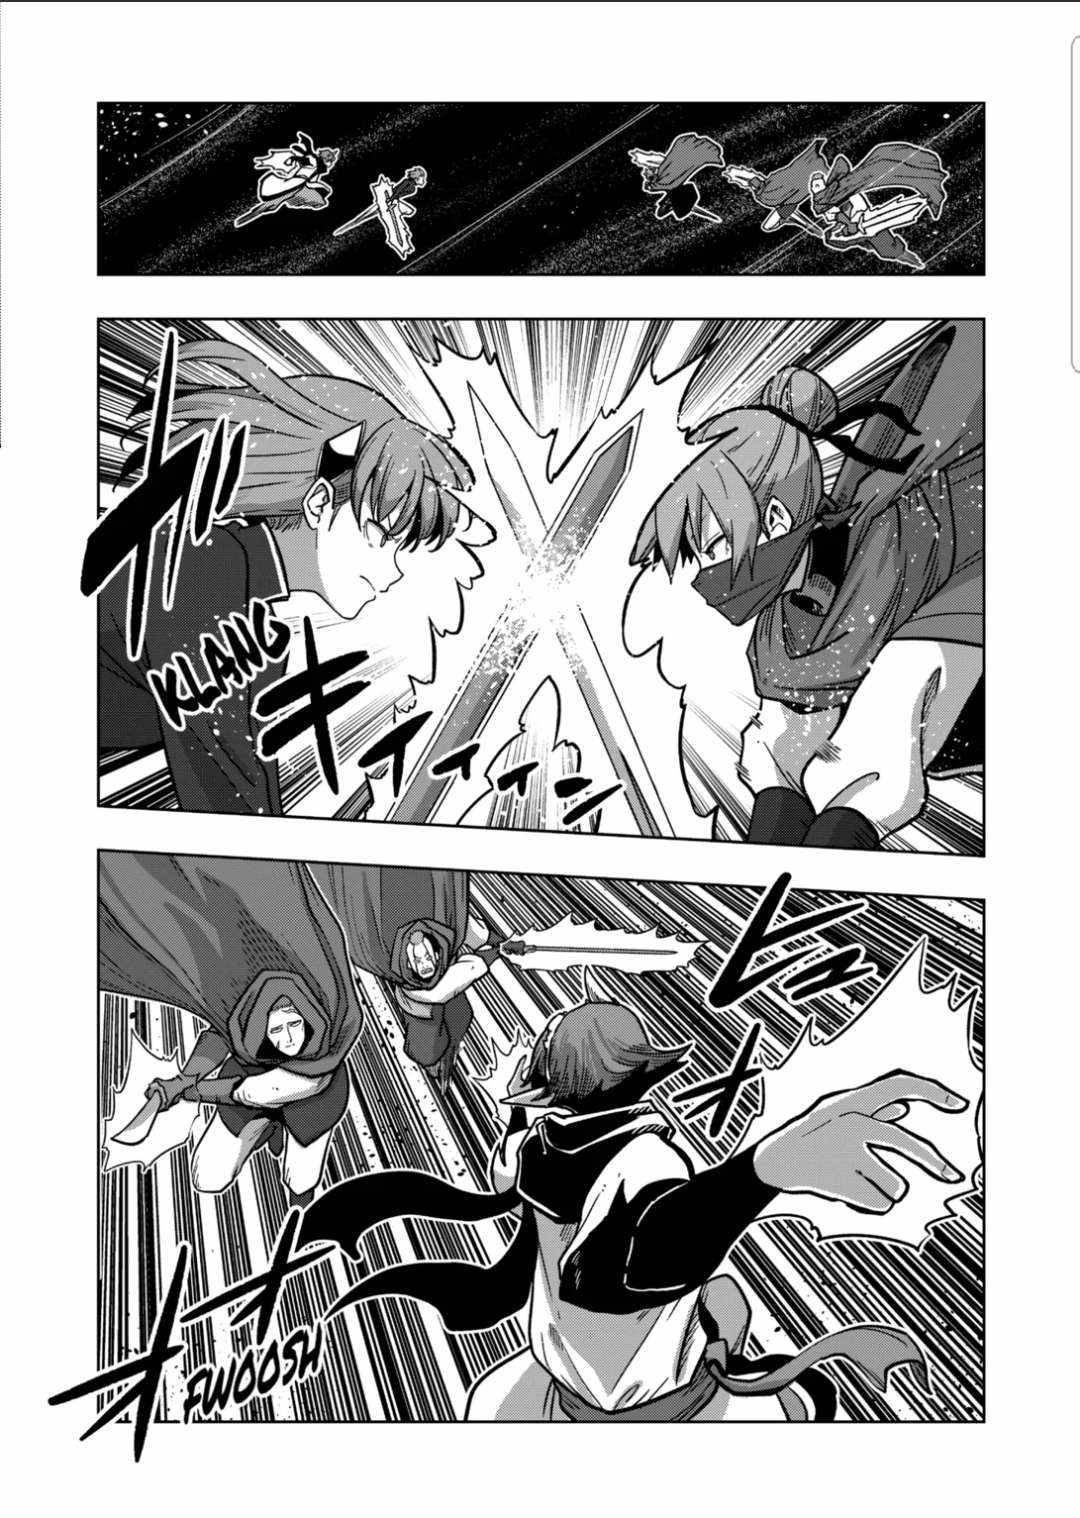 Verndio - Surreal Sword Saga - 13 page 18-6c0726b4